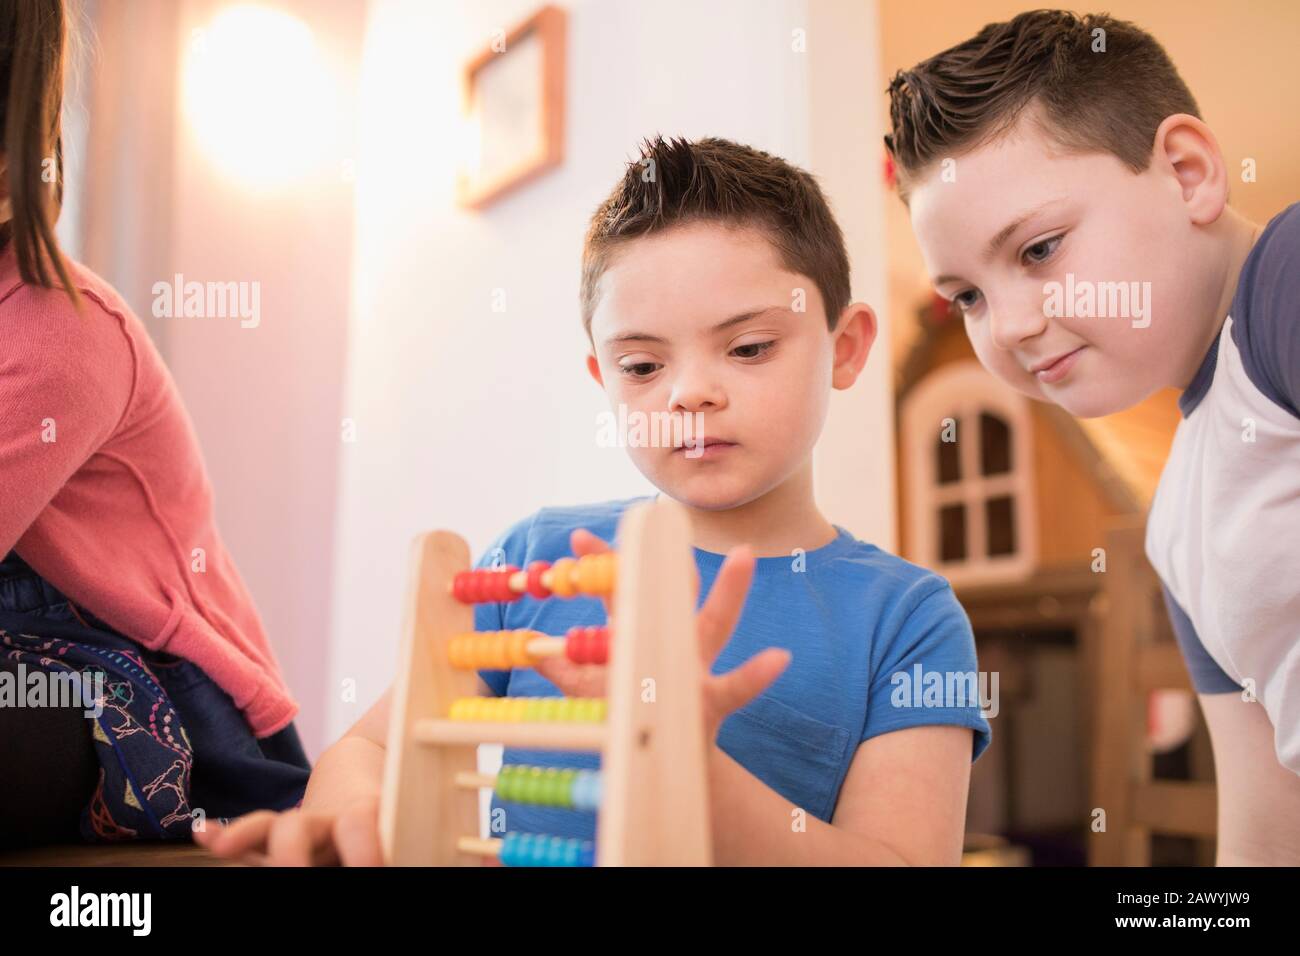 Garçon avec le syndrome De Down et frère jouant avec le jouet Banque D'Images